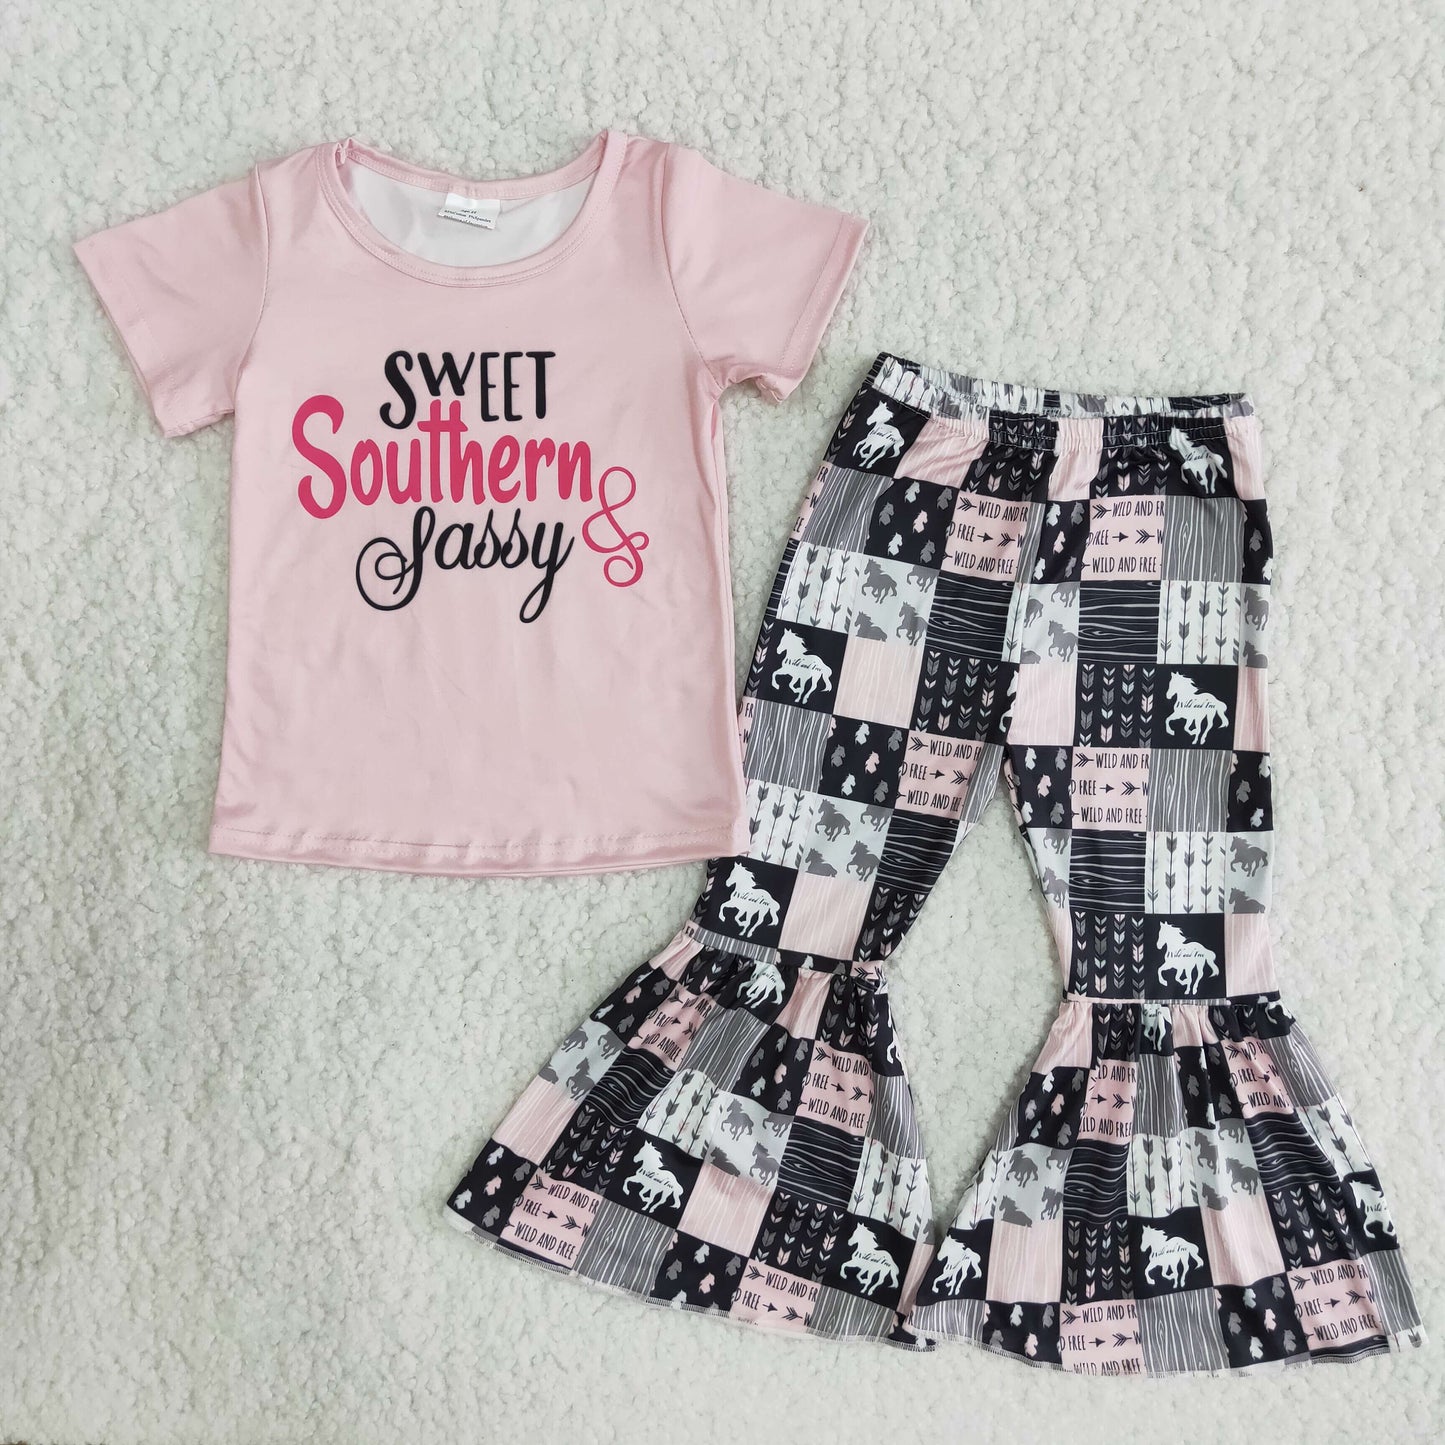 Sweet Southern Sassy clothing set